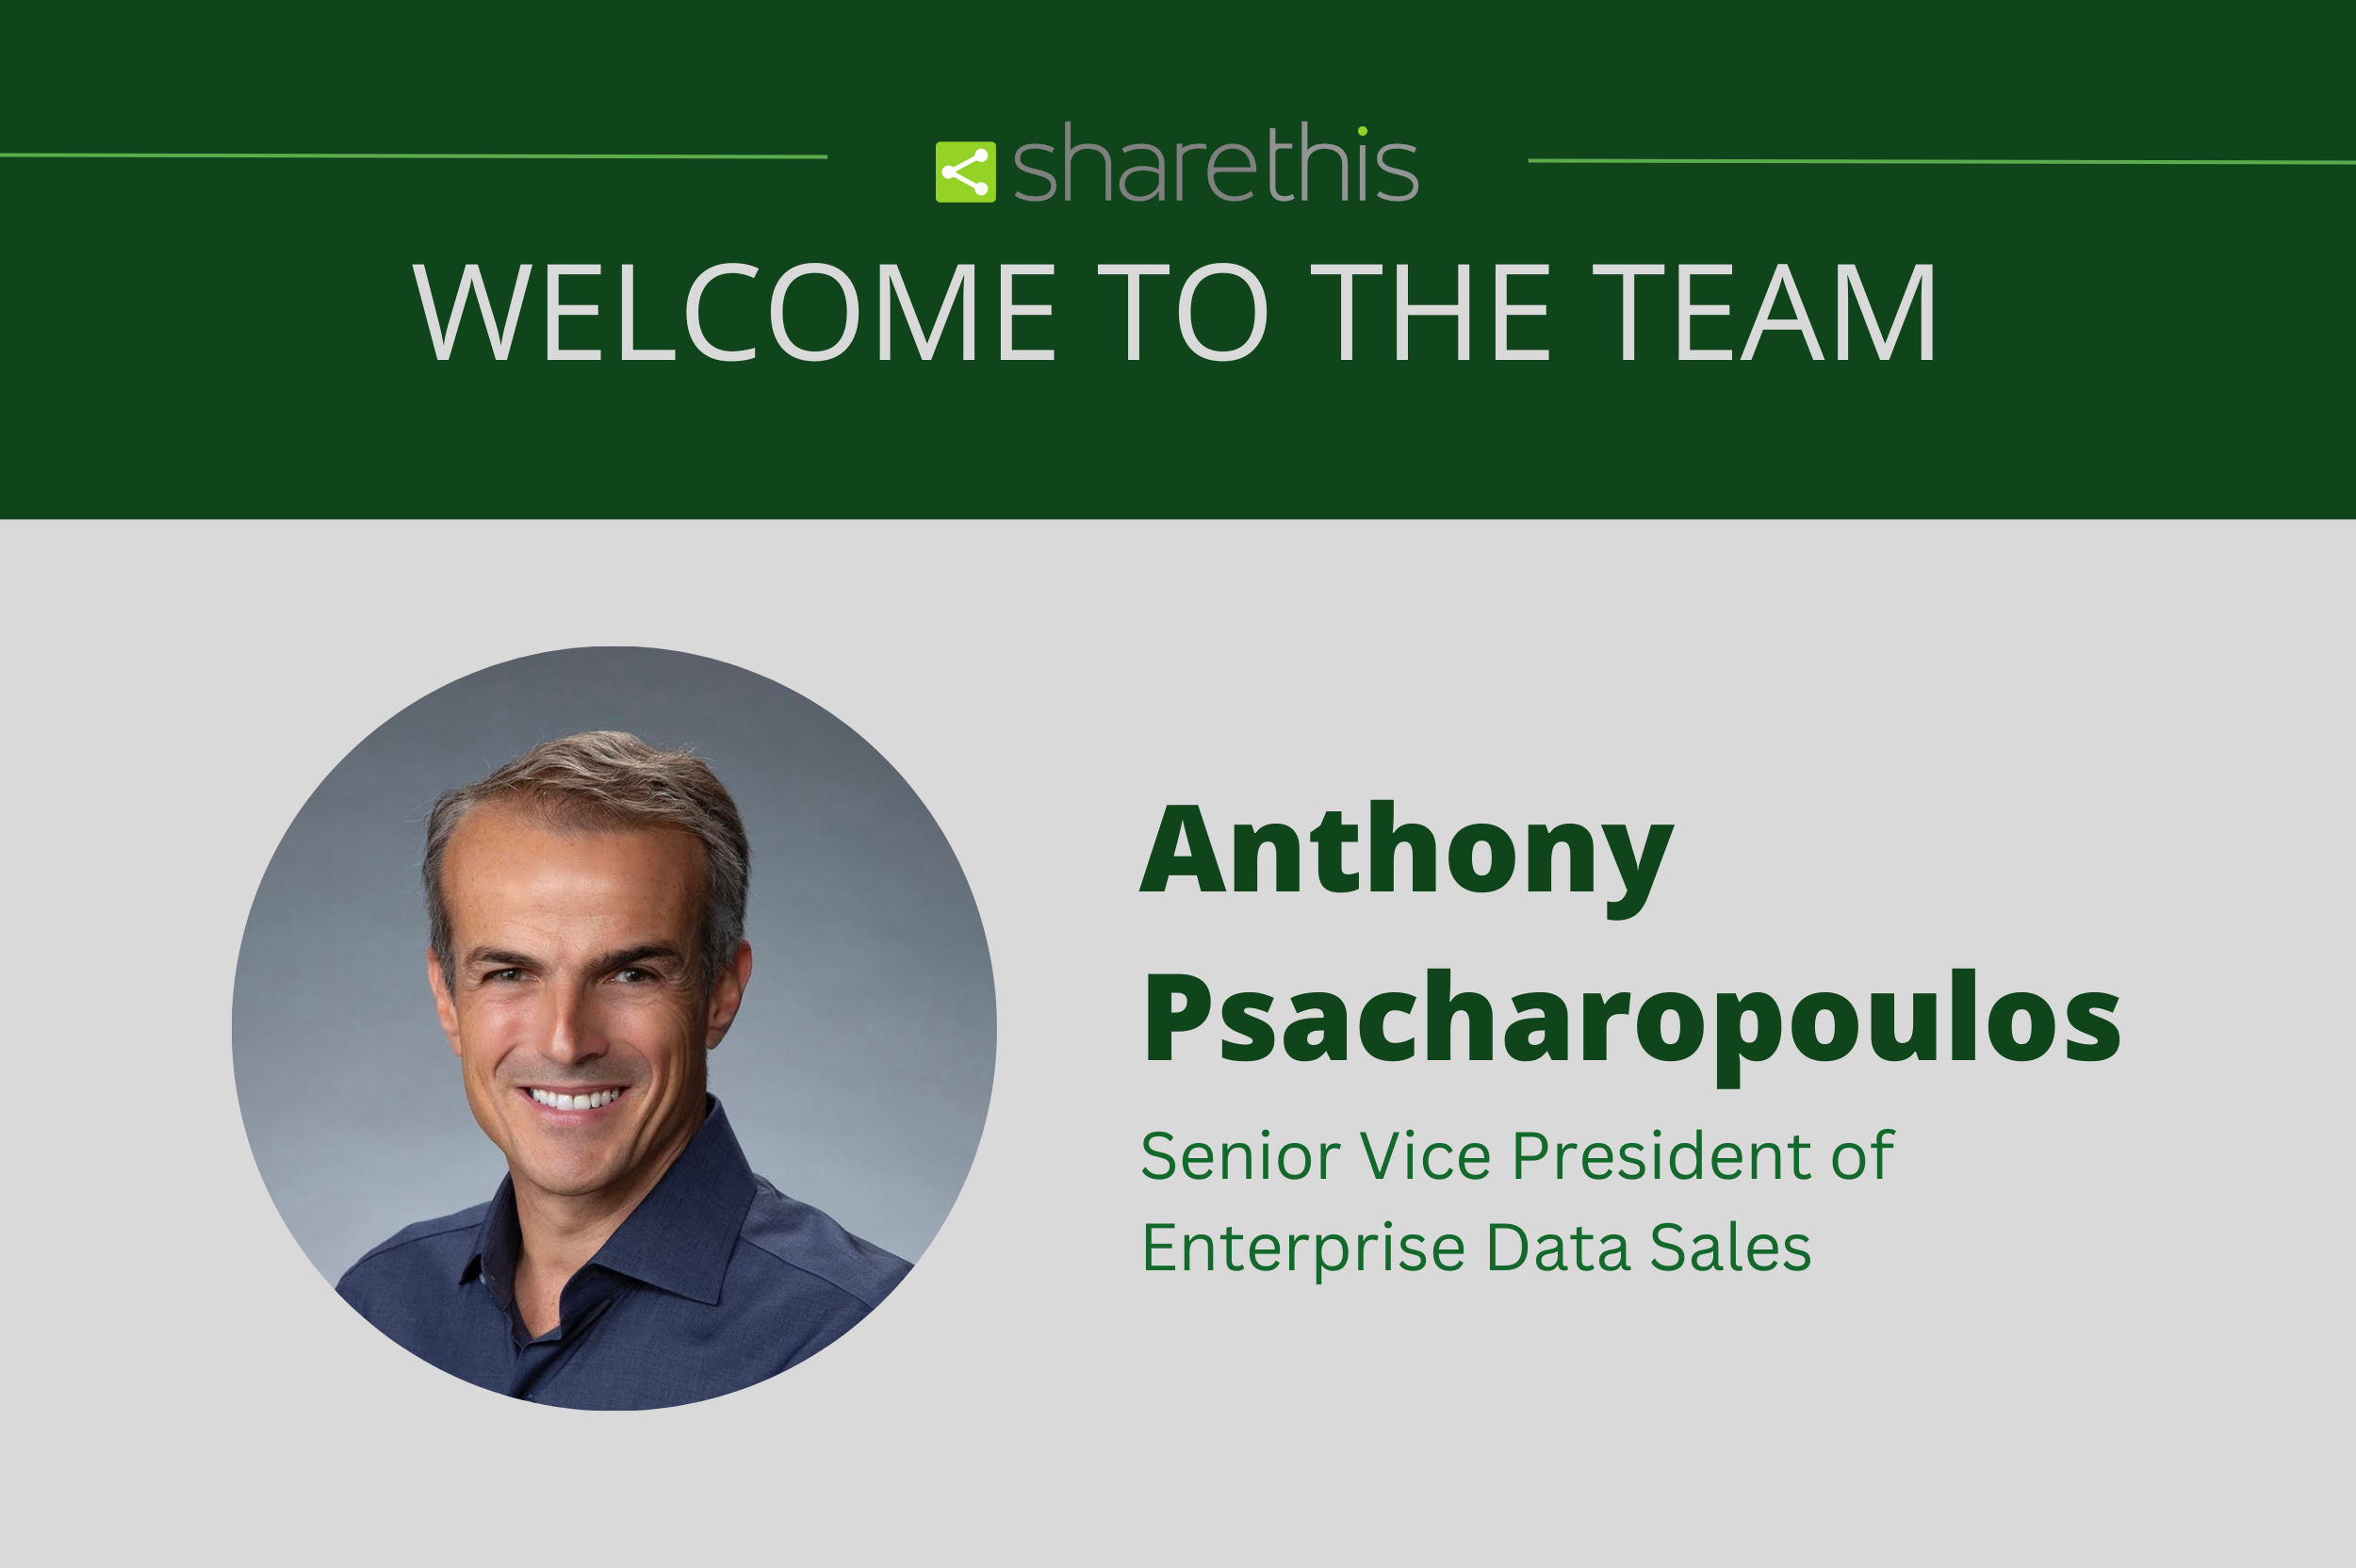 ShareThis nombra al veterano de la industria de datos Anthony Psacharopoulos Vicepresidente Senior de Ventas de Datos Empresariales